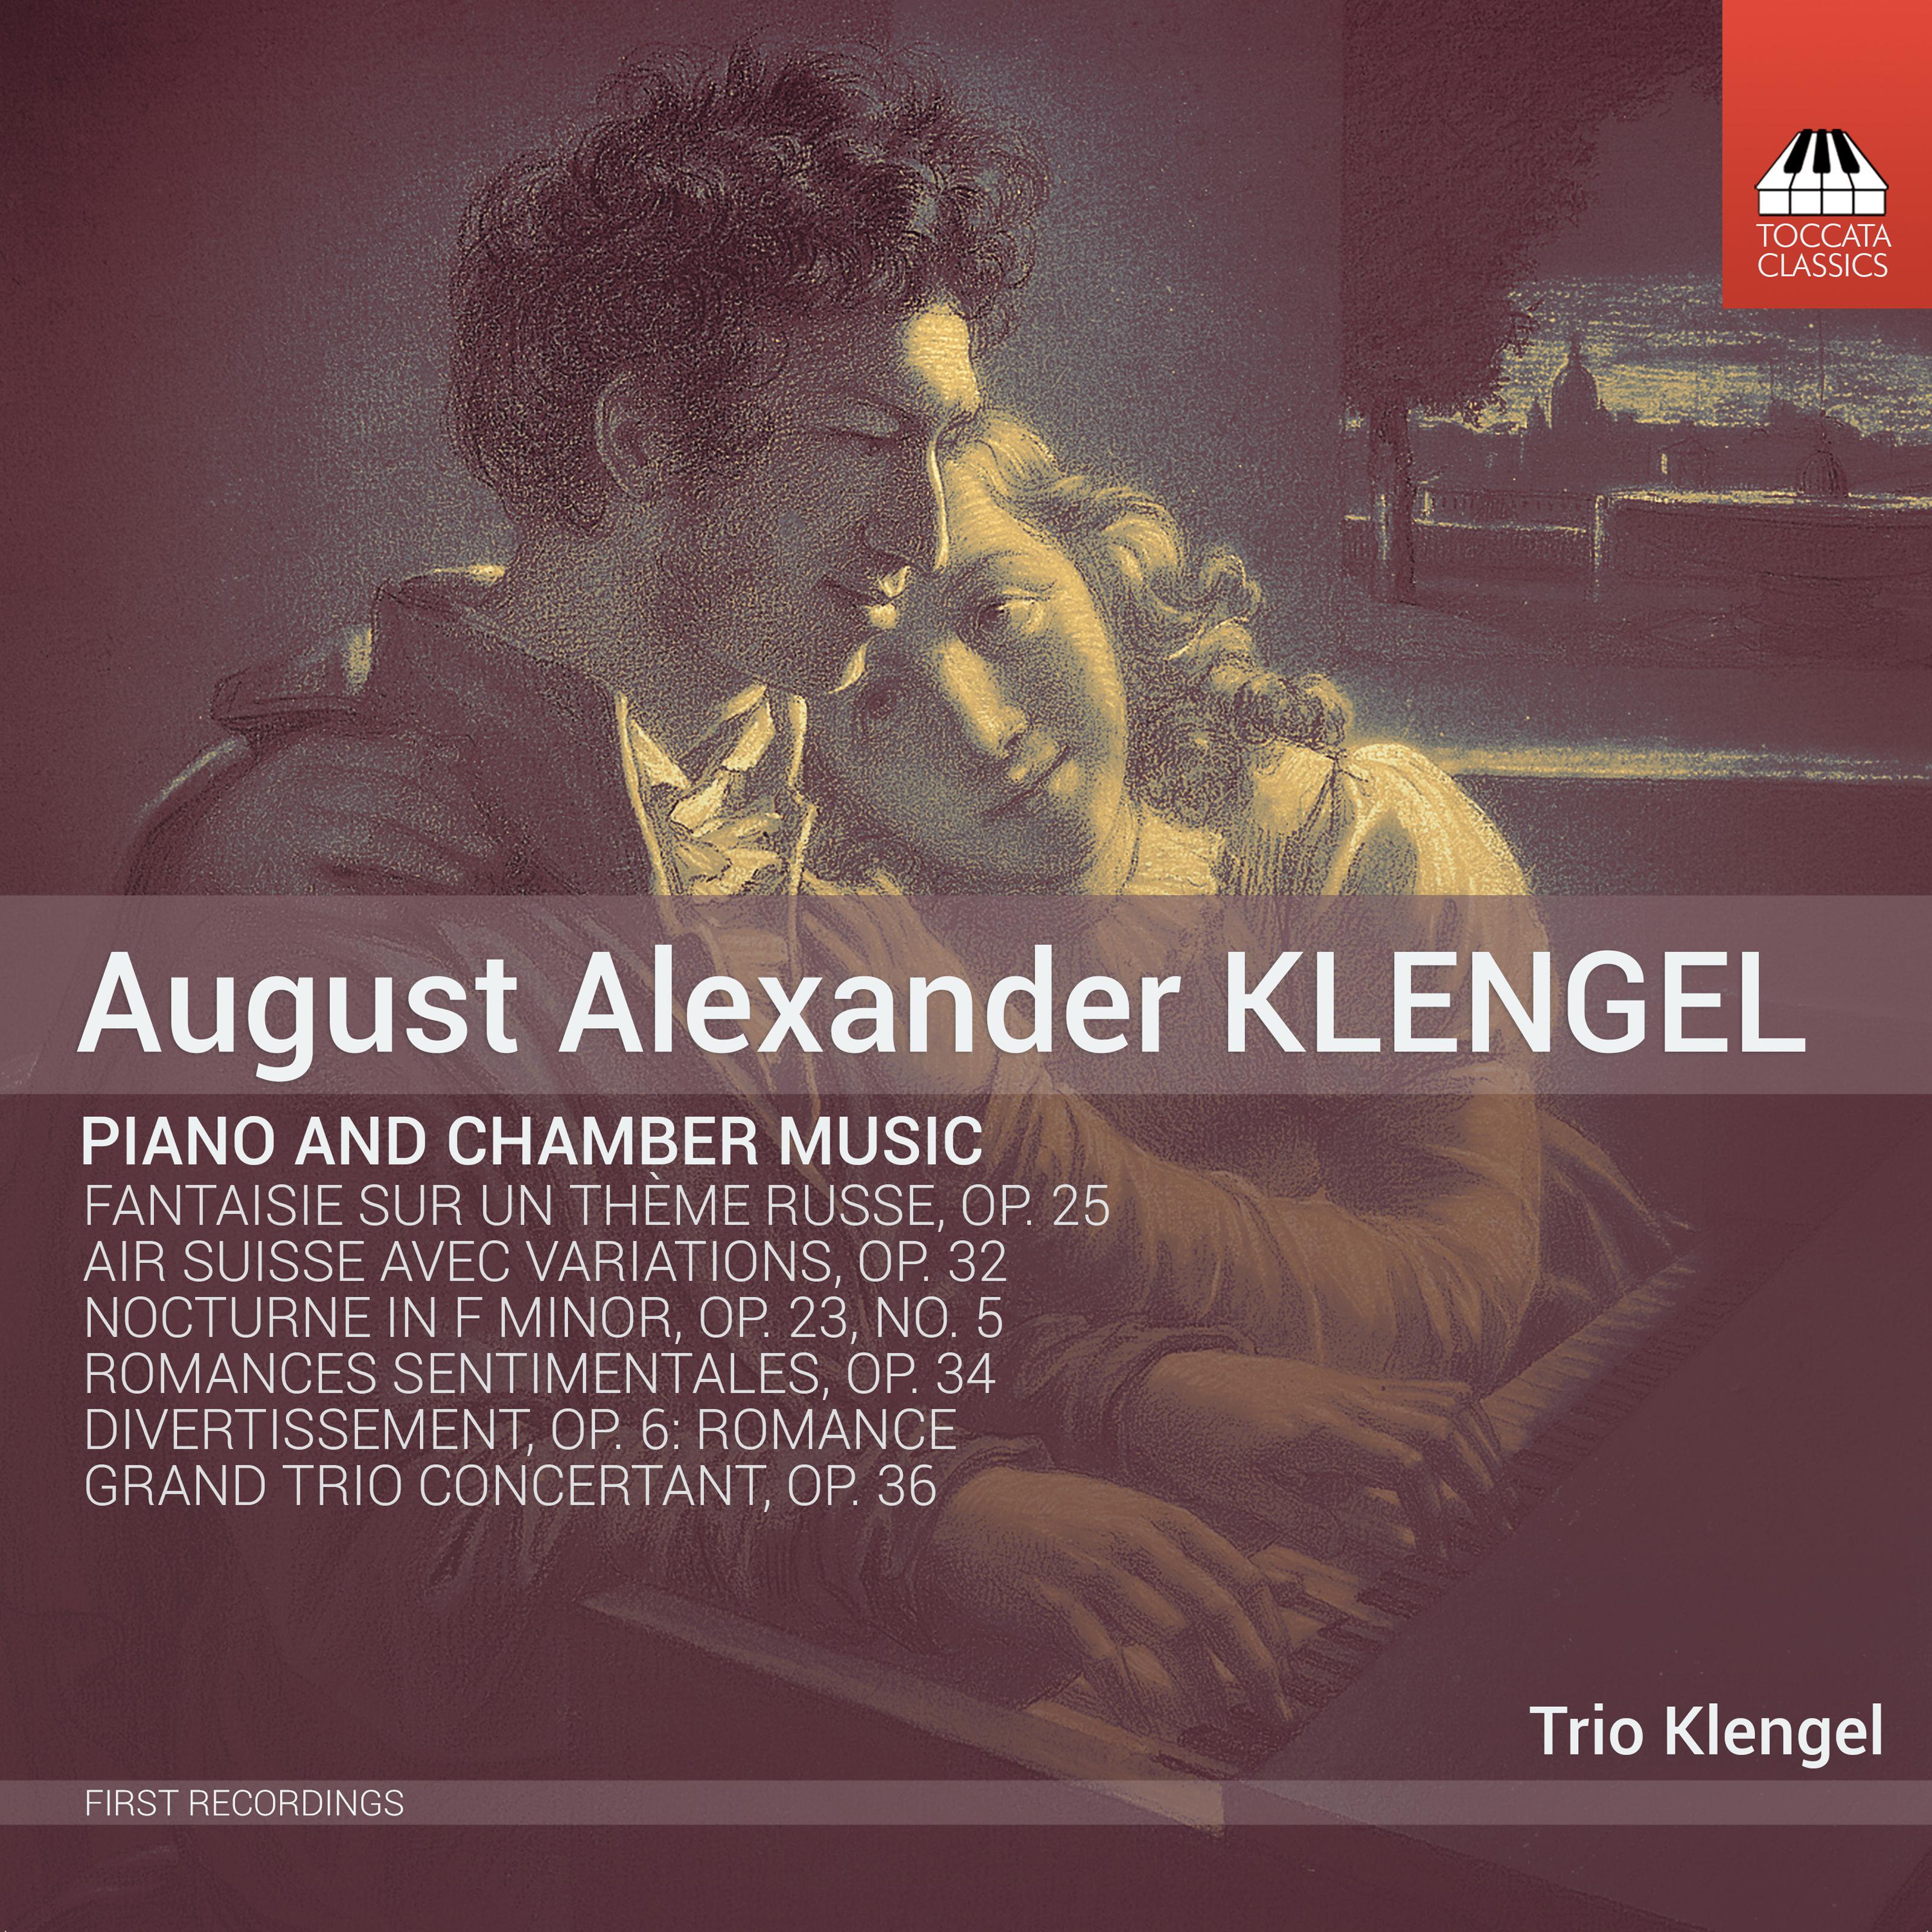 Grand trio concertant in C Minor, Op. 36: I. Largo - Allegro non troppo ma con fuoco